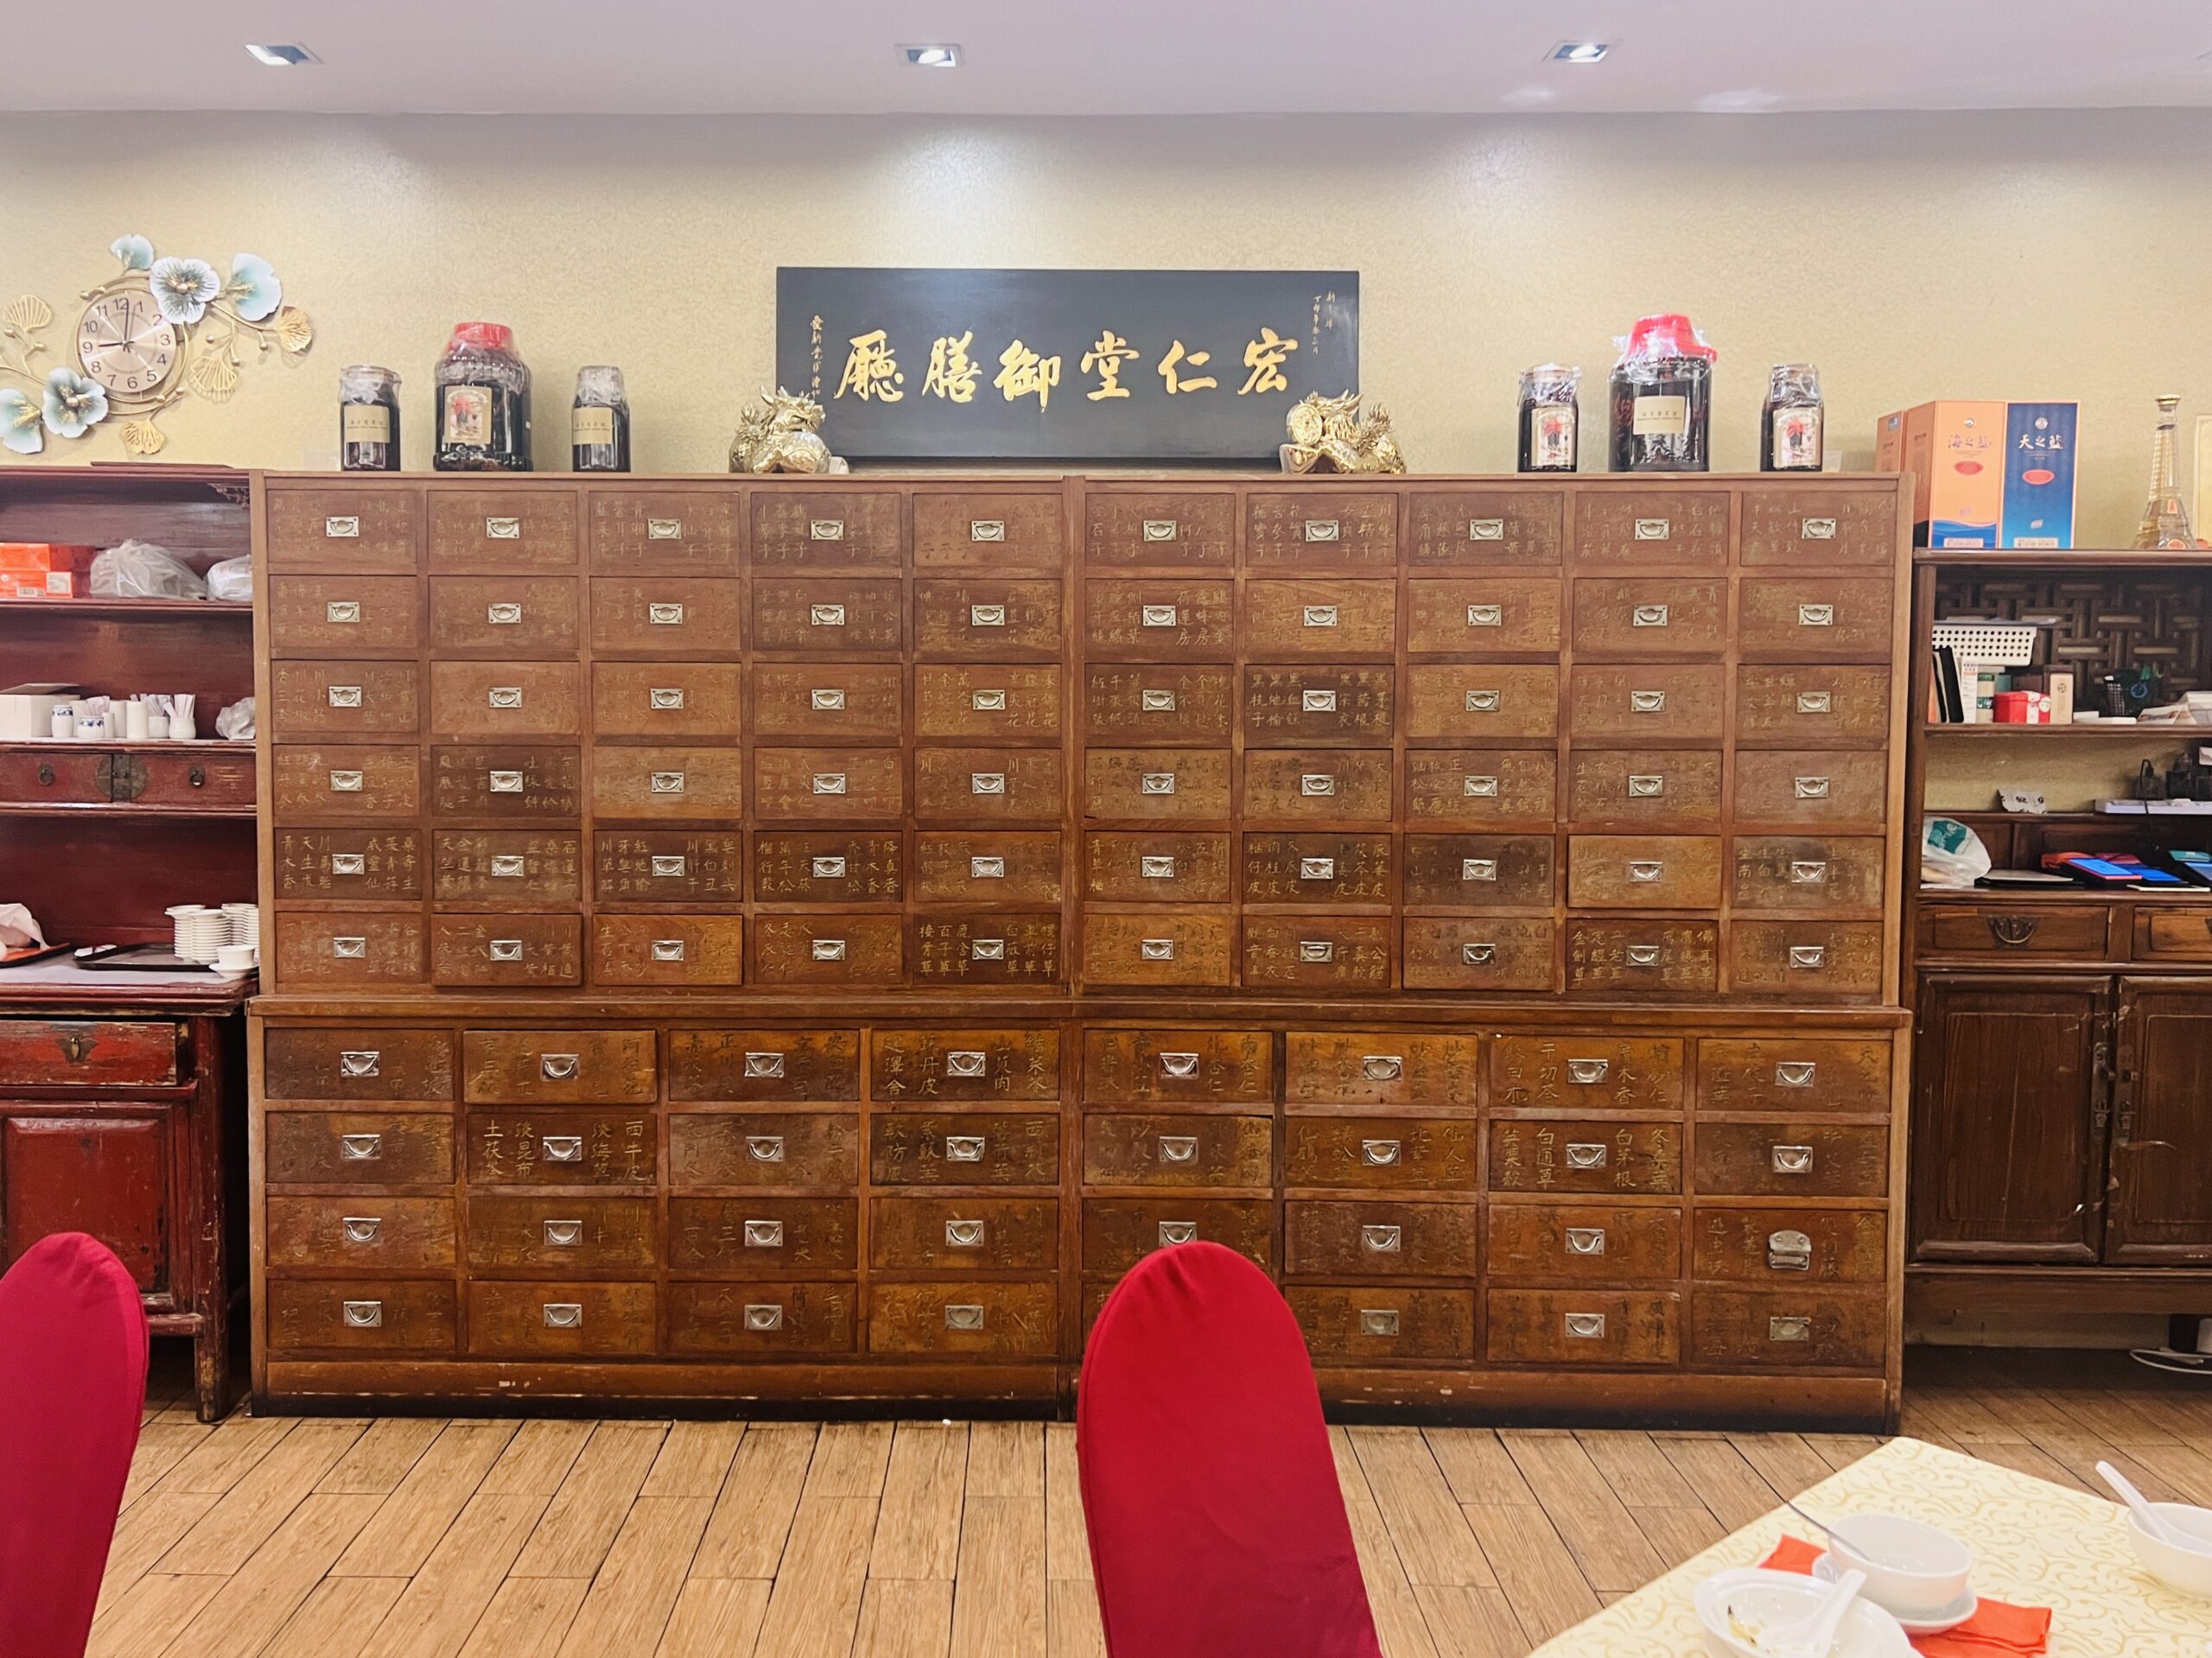 Imperial Restaurant - Medicine Cabinet